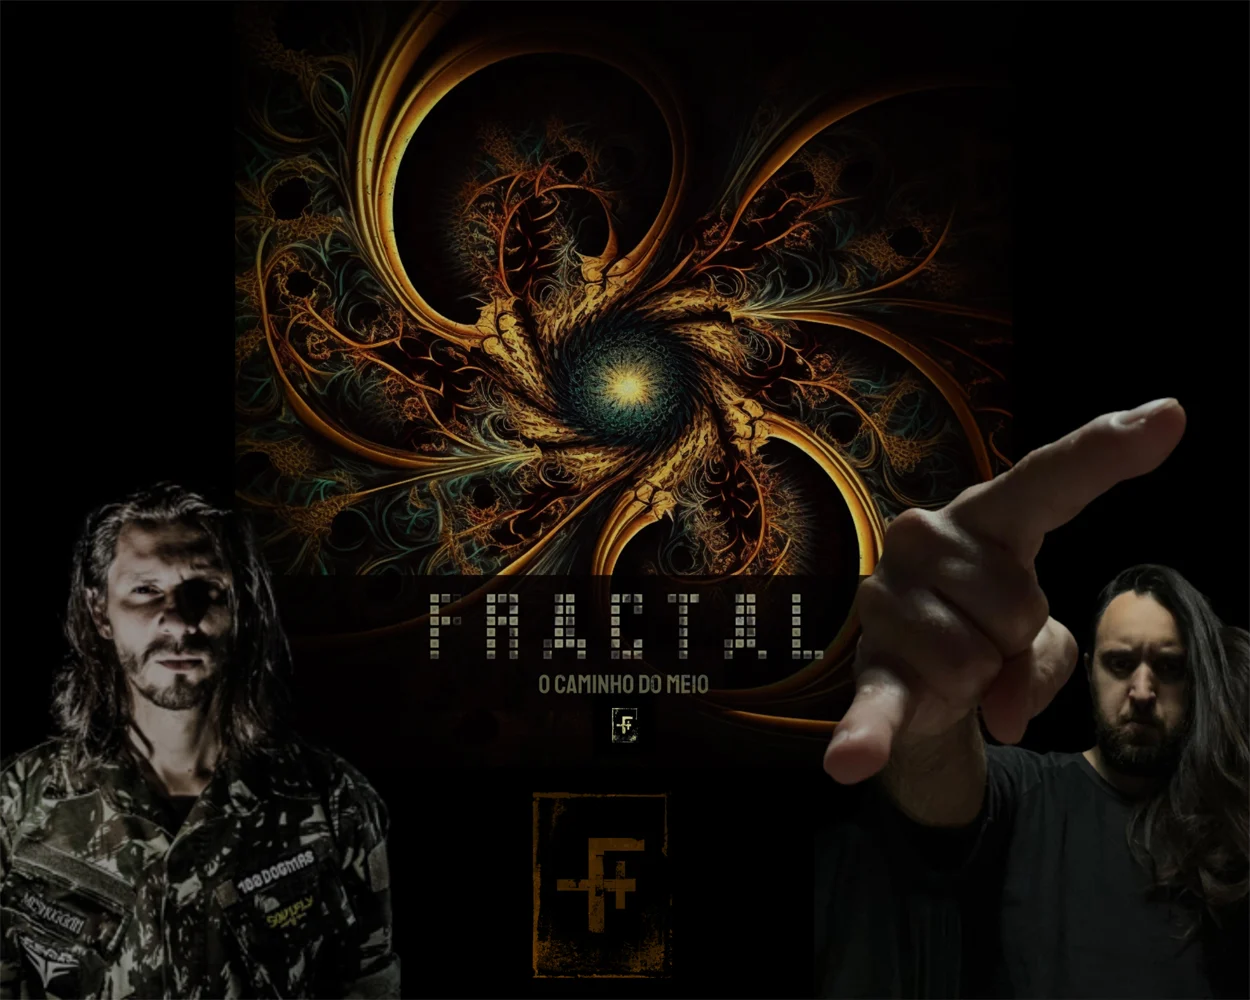 Projeto FRACTAL lança pesadíssimo álbum de estreia ligado aos conceitos do budismo!